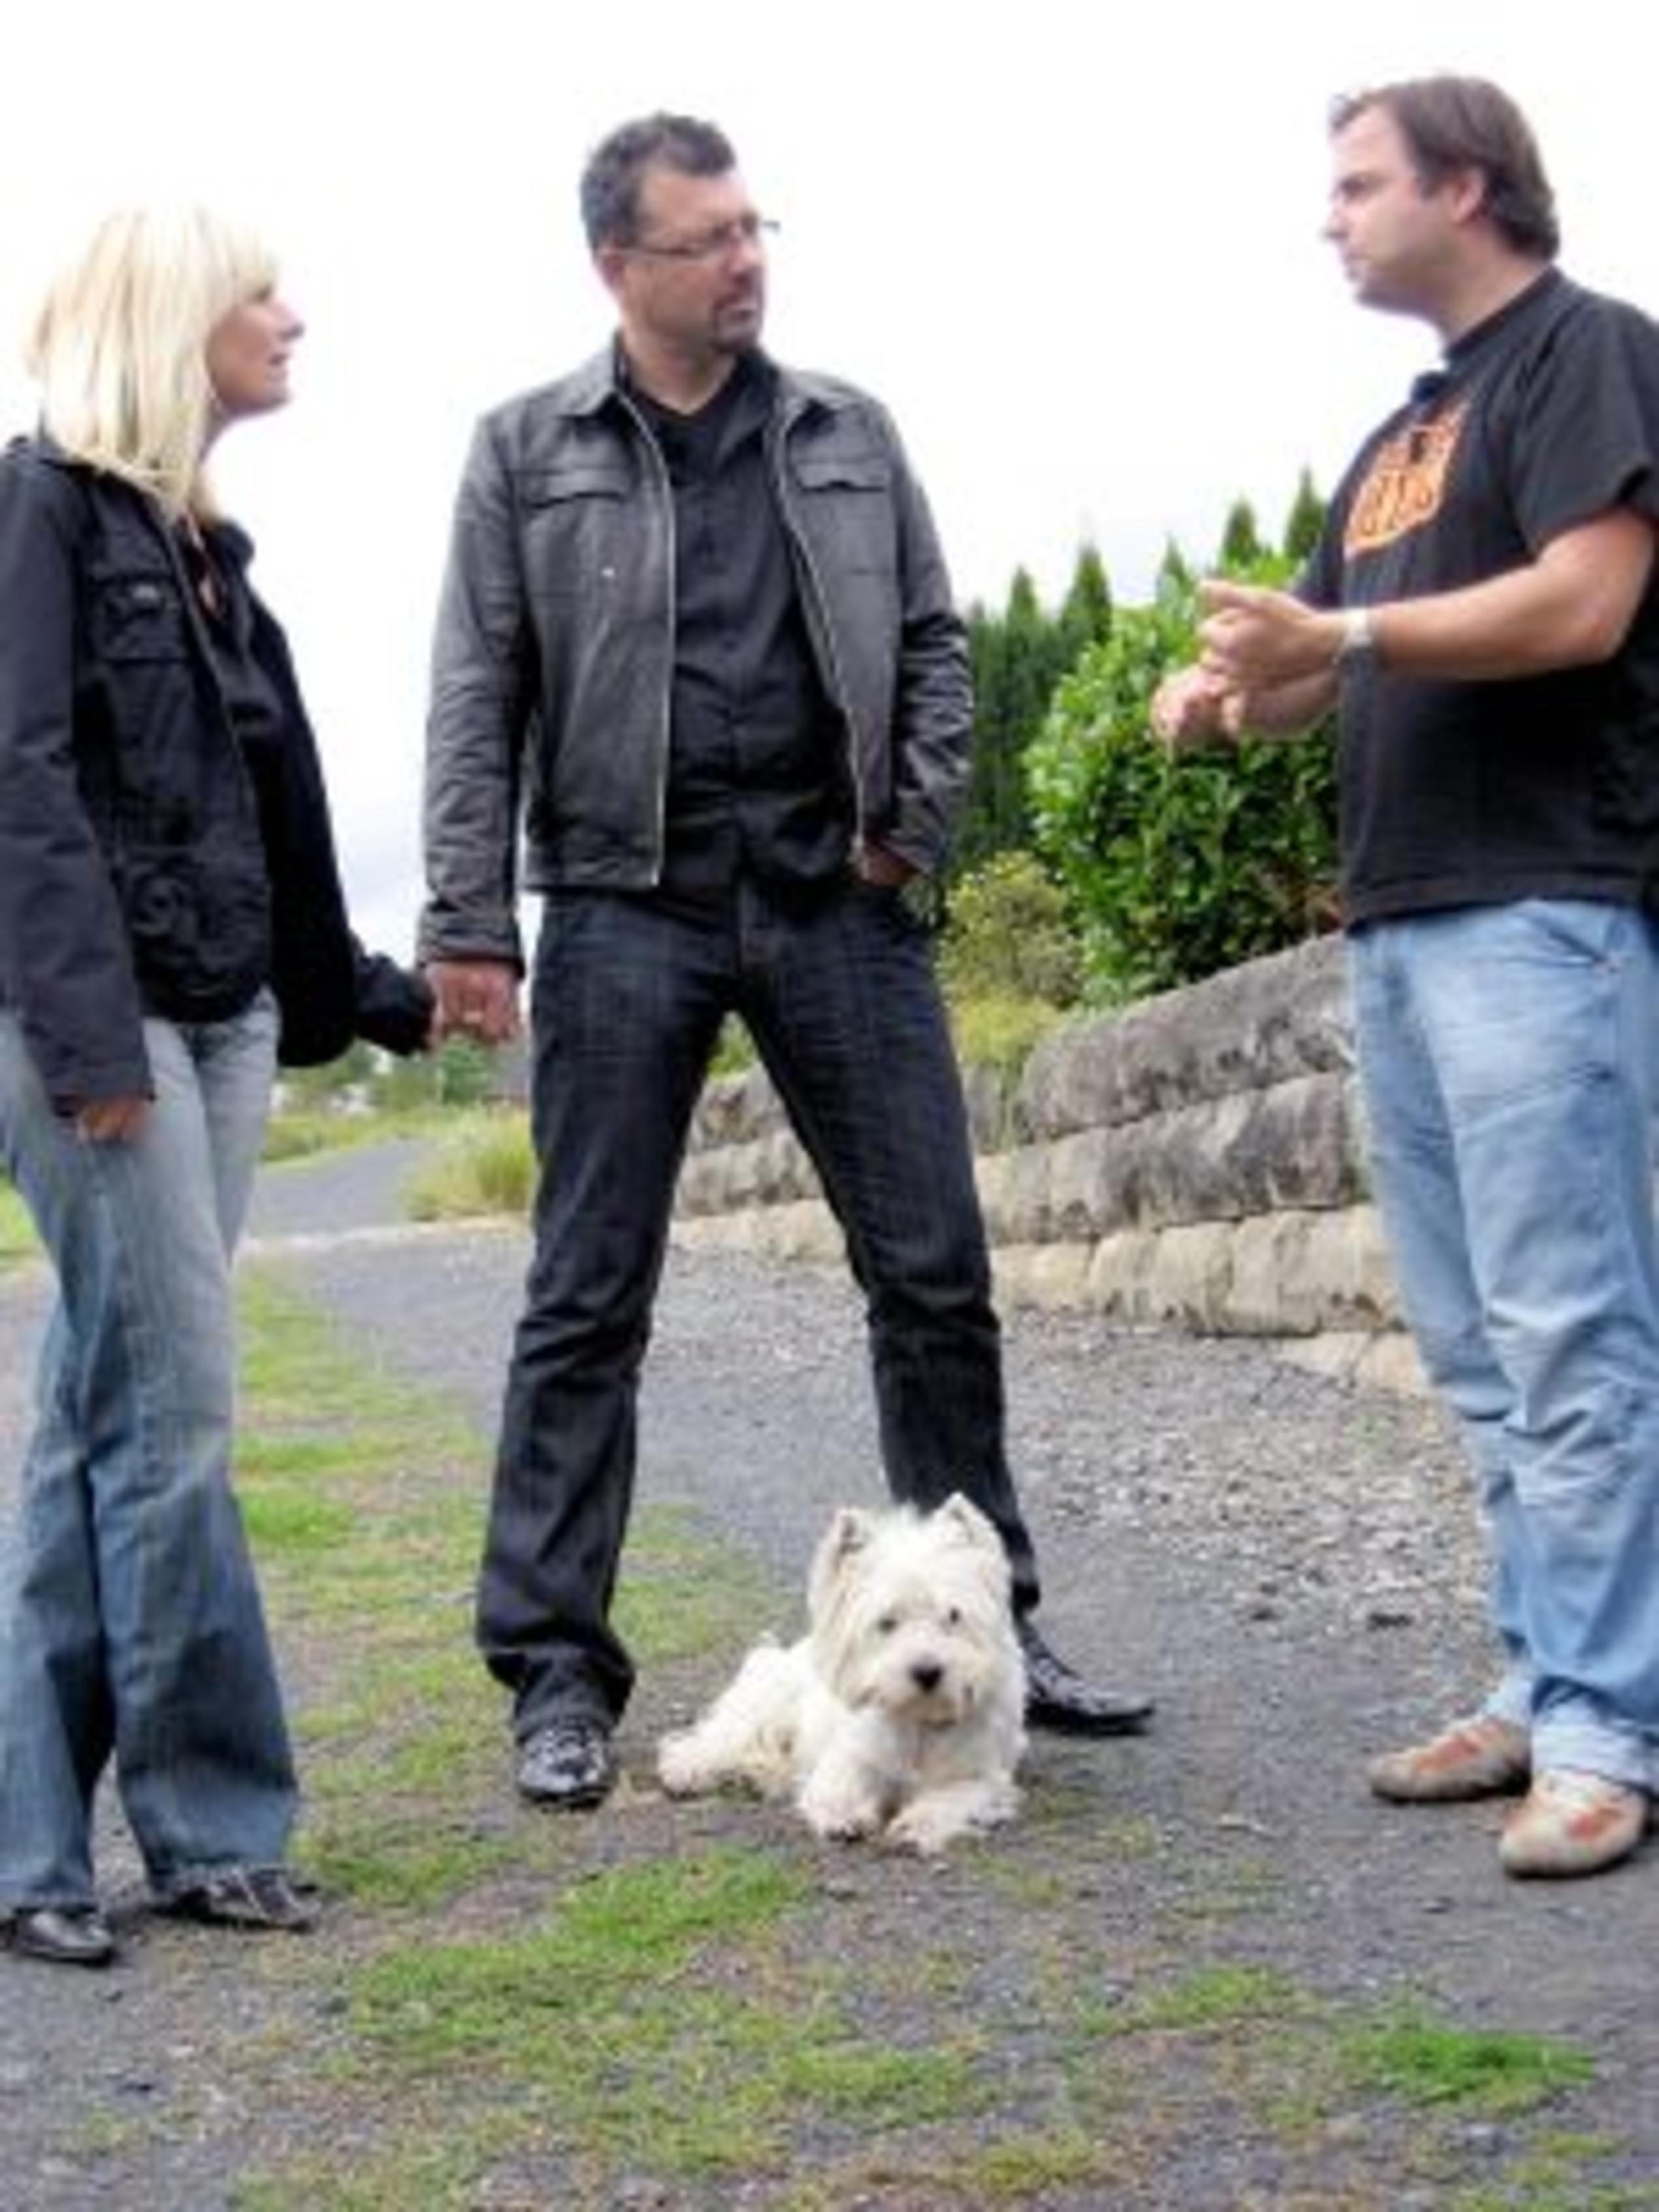 V.l.: Ehepaar Birgit und Christian Eltner, Hundeprofi Martin Rütter, West Highland-Terrier Kenzo. Foto: VOX/Mina TV GmbH